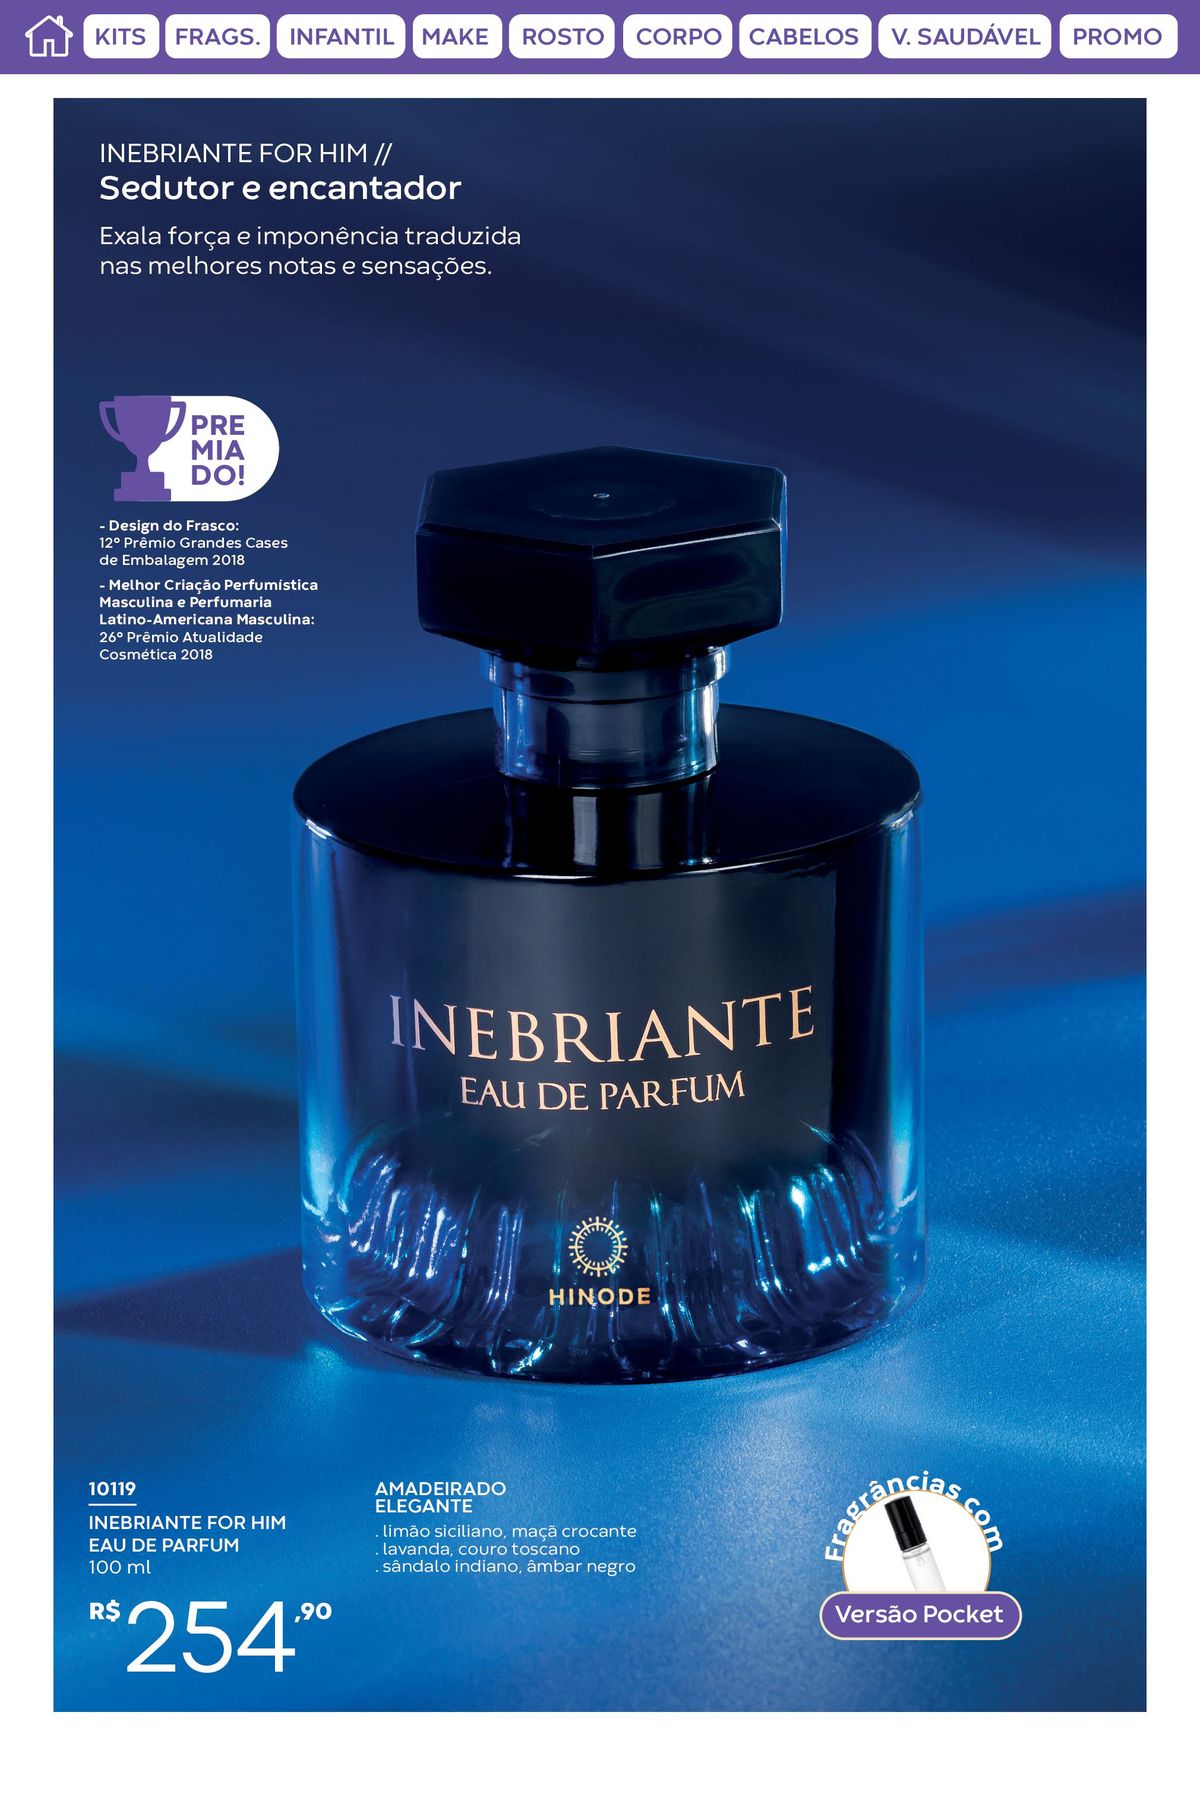 INEBRIANTE FOR HIM - Perfume Eau de Parfum